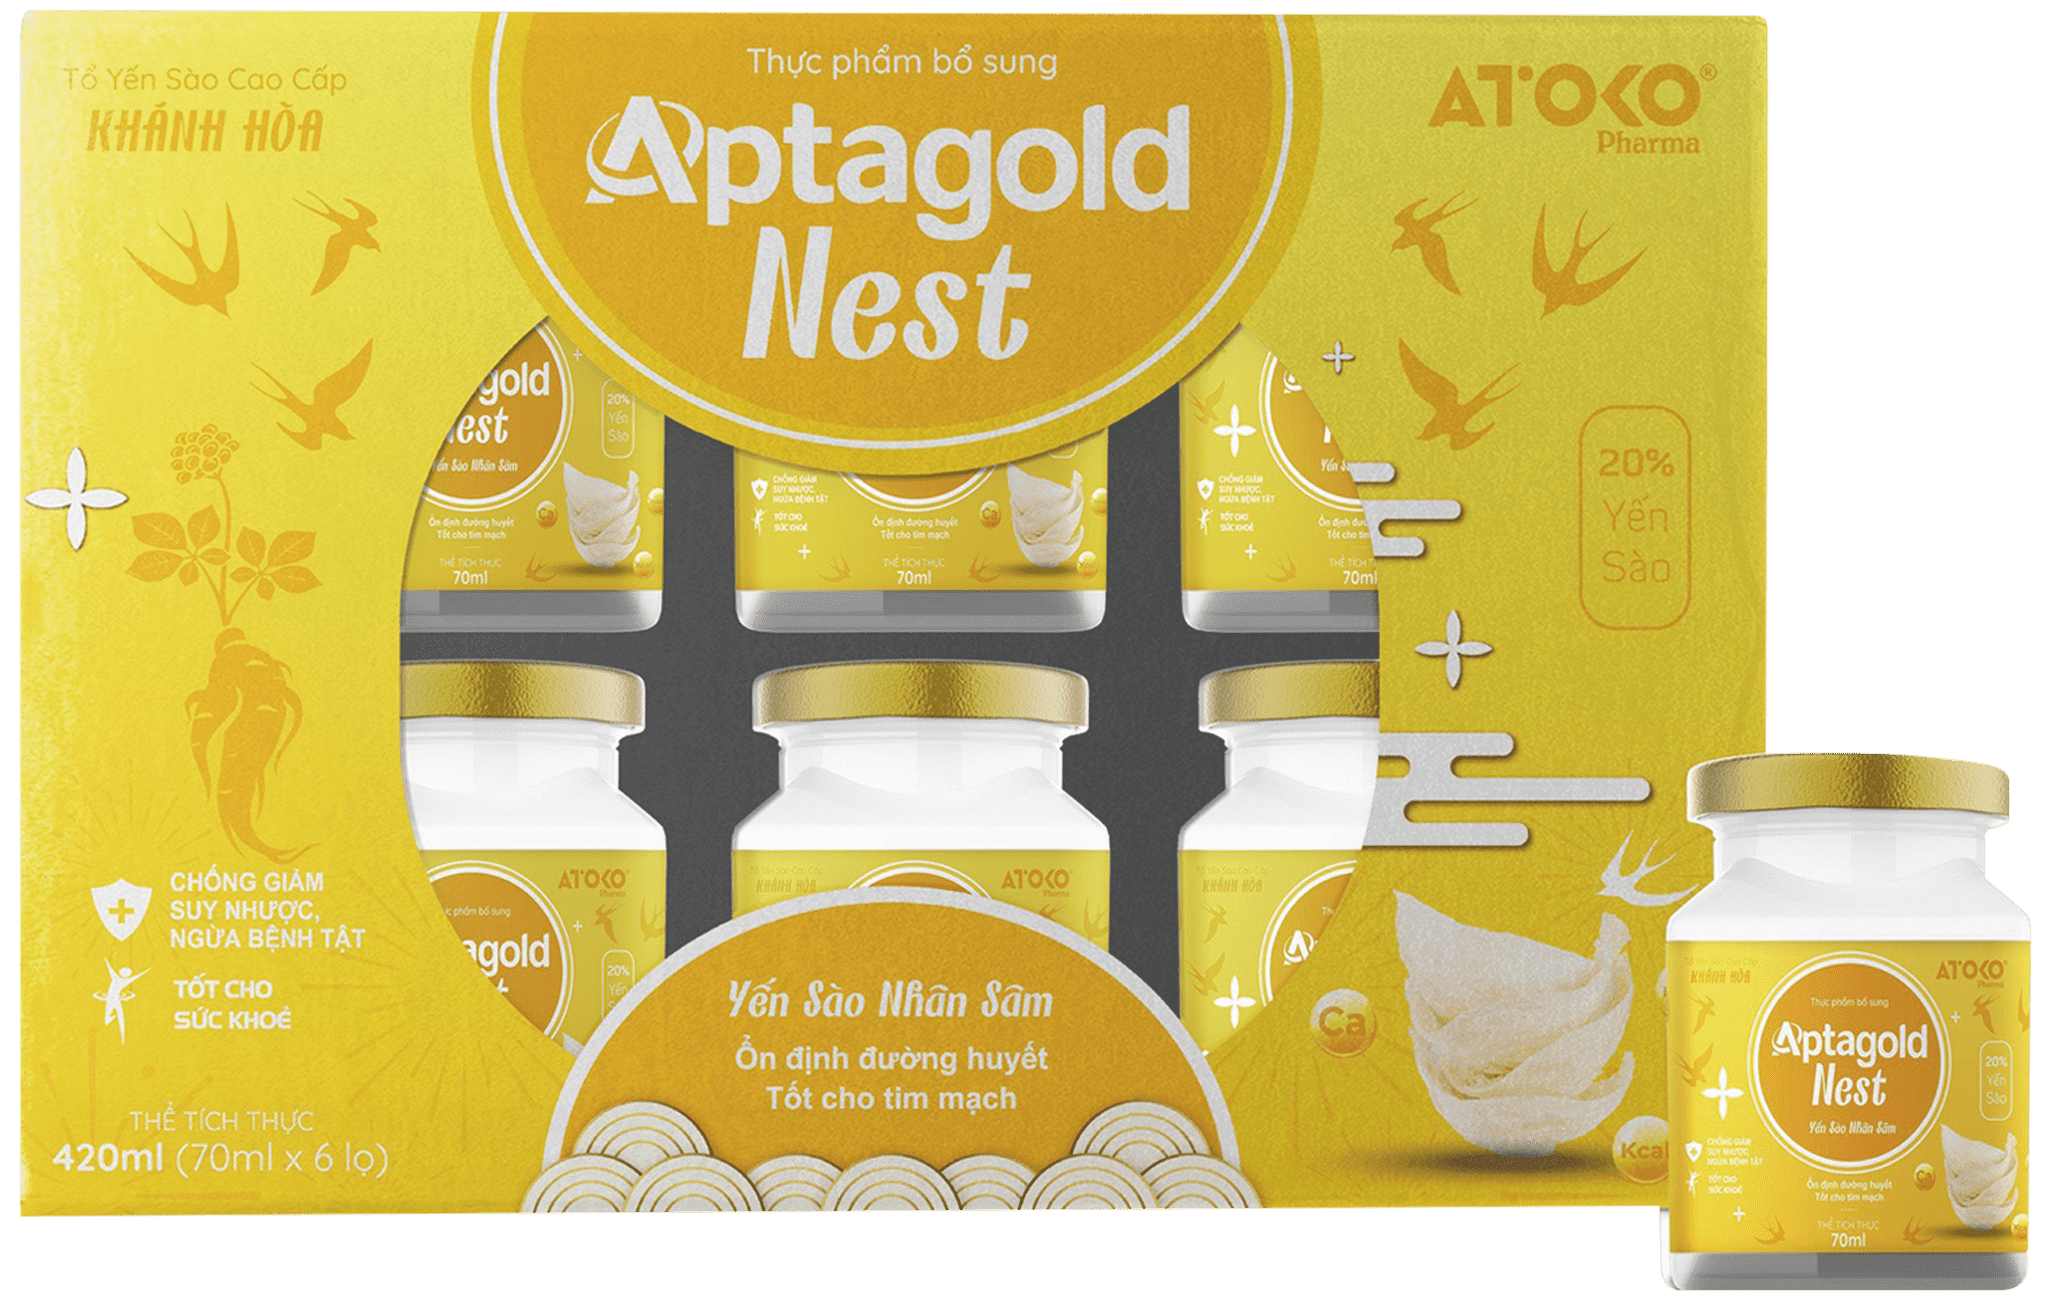 Aptagold Nest Nhân Sâm